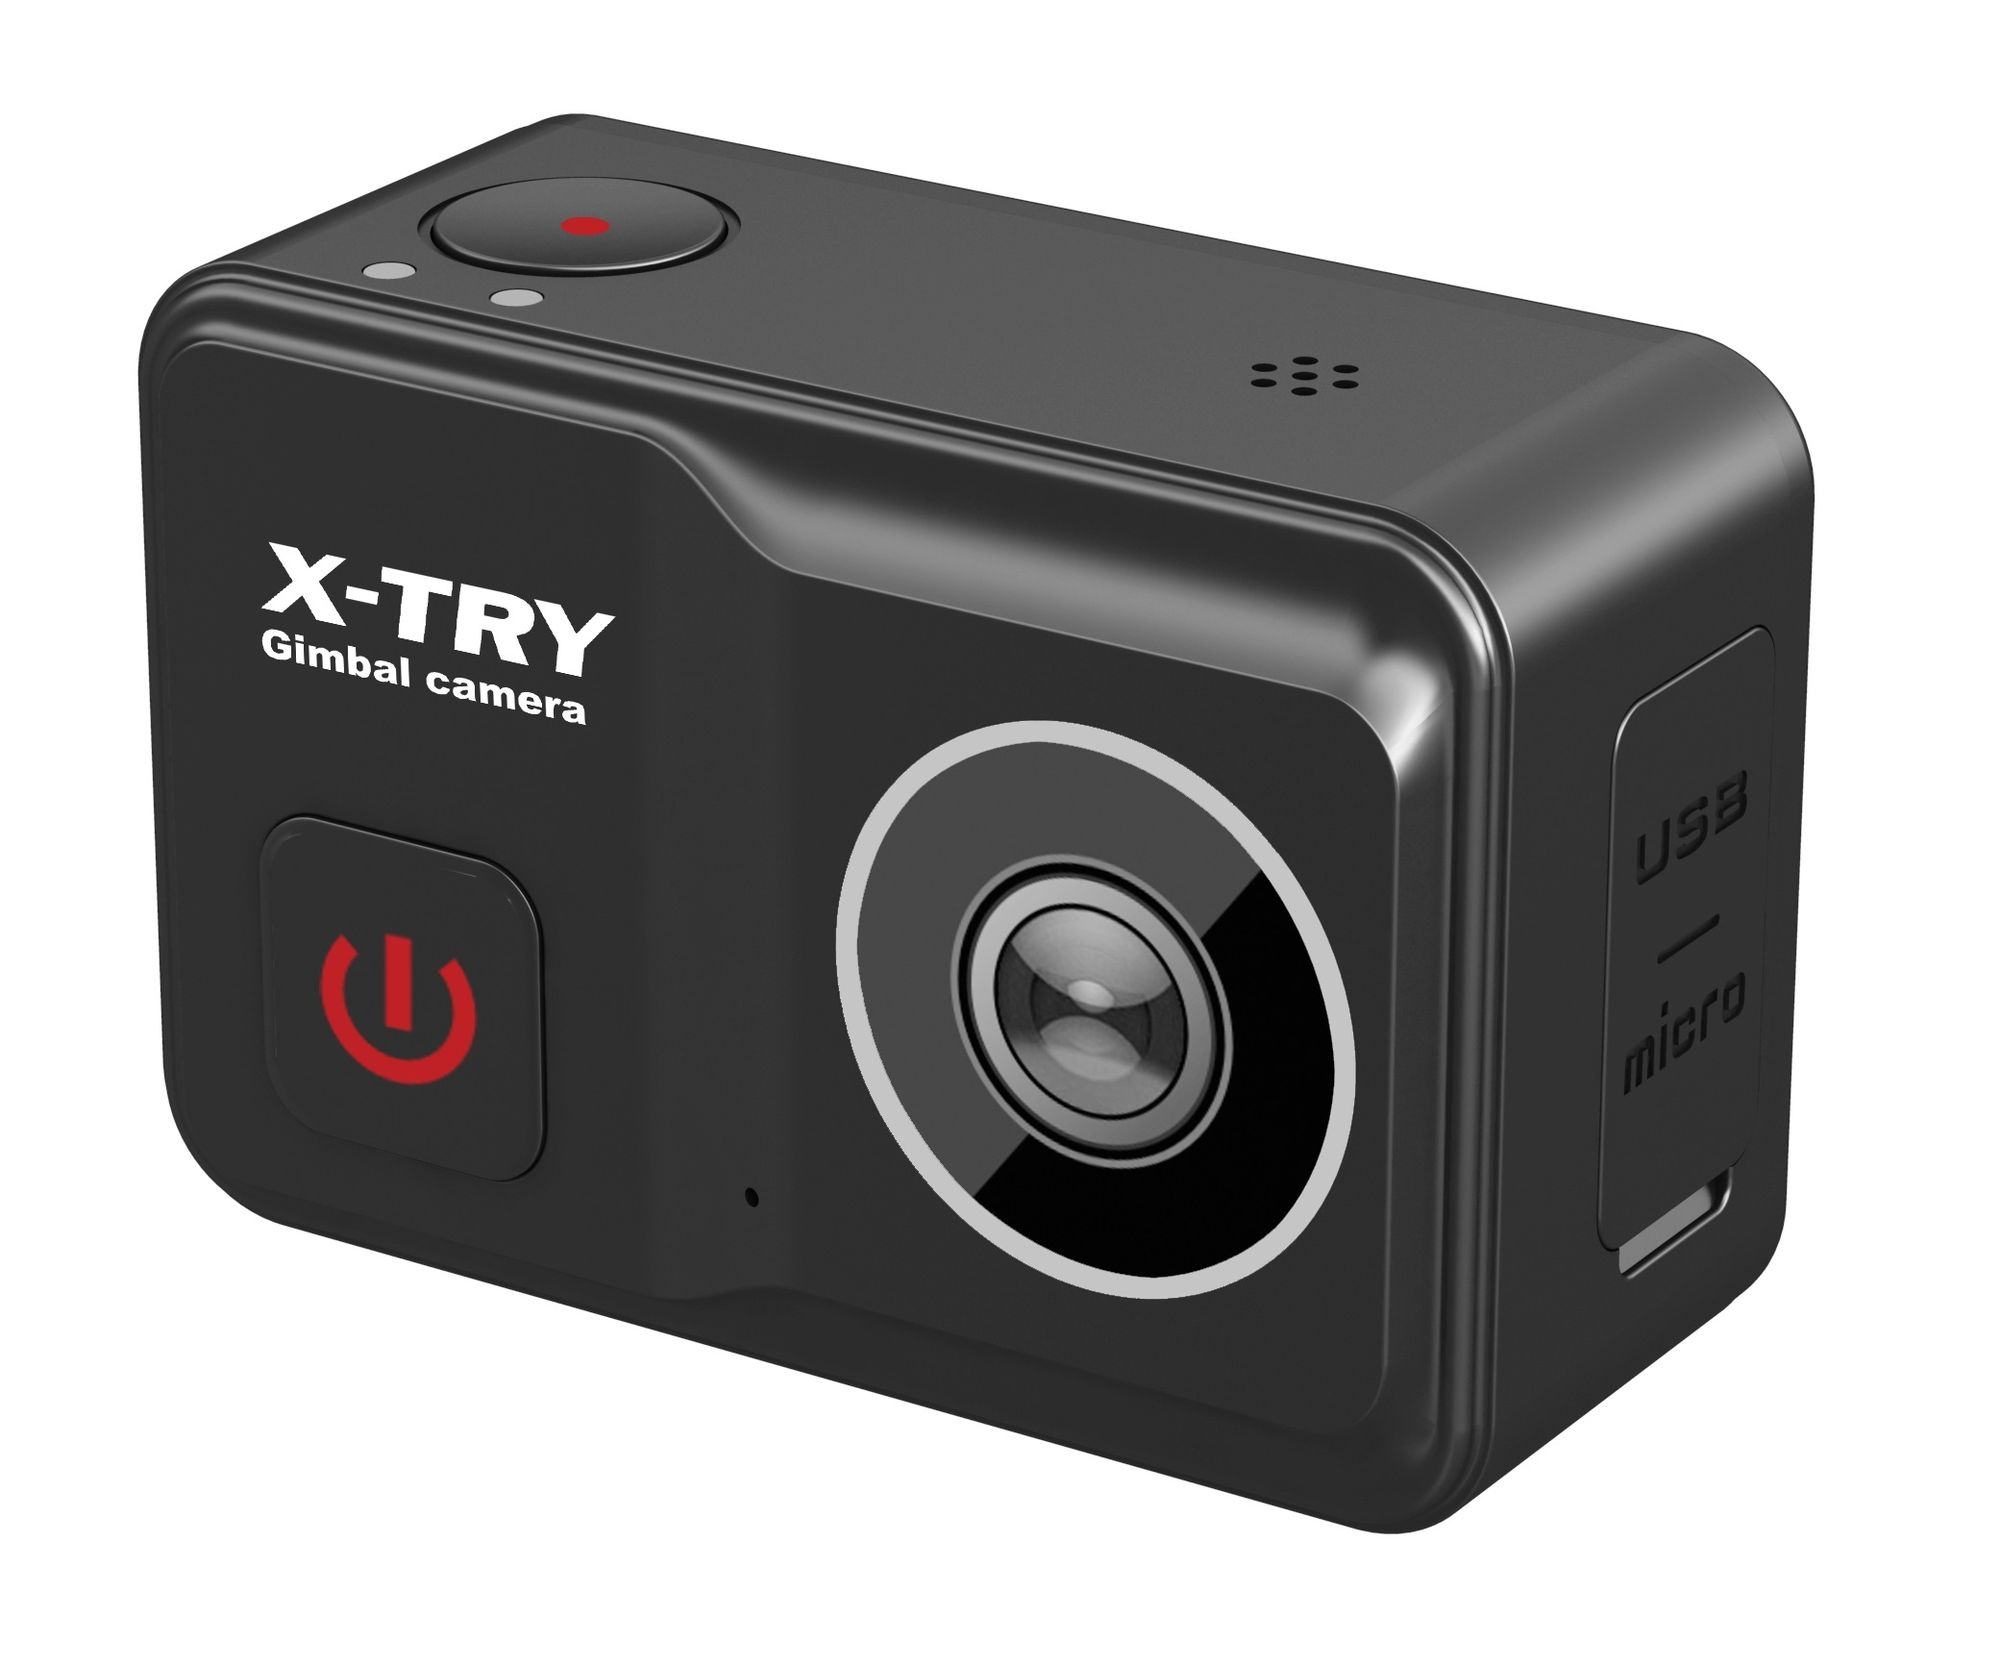 Экшн камера X-Try XTC502 Gimbal Real 4K/60FPS WDR Wi-Fi Power экшн камера x try xtc261 real 4k wi fi autokit